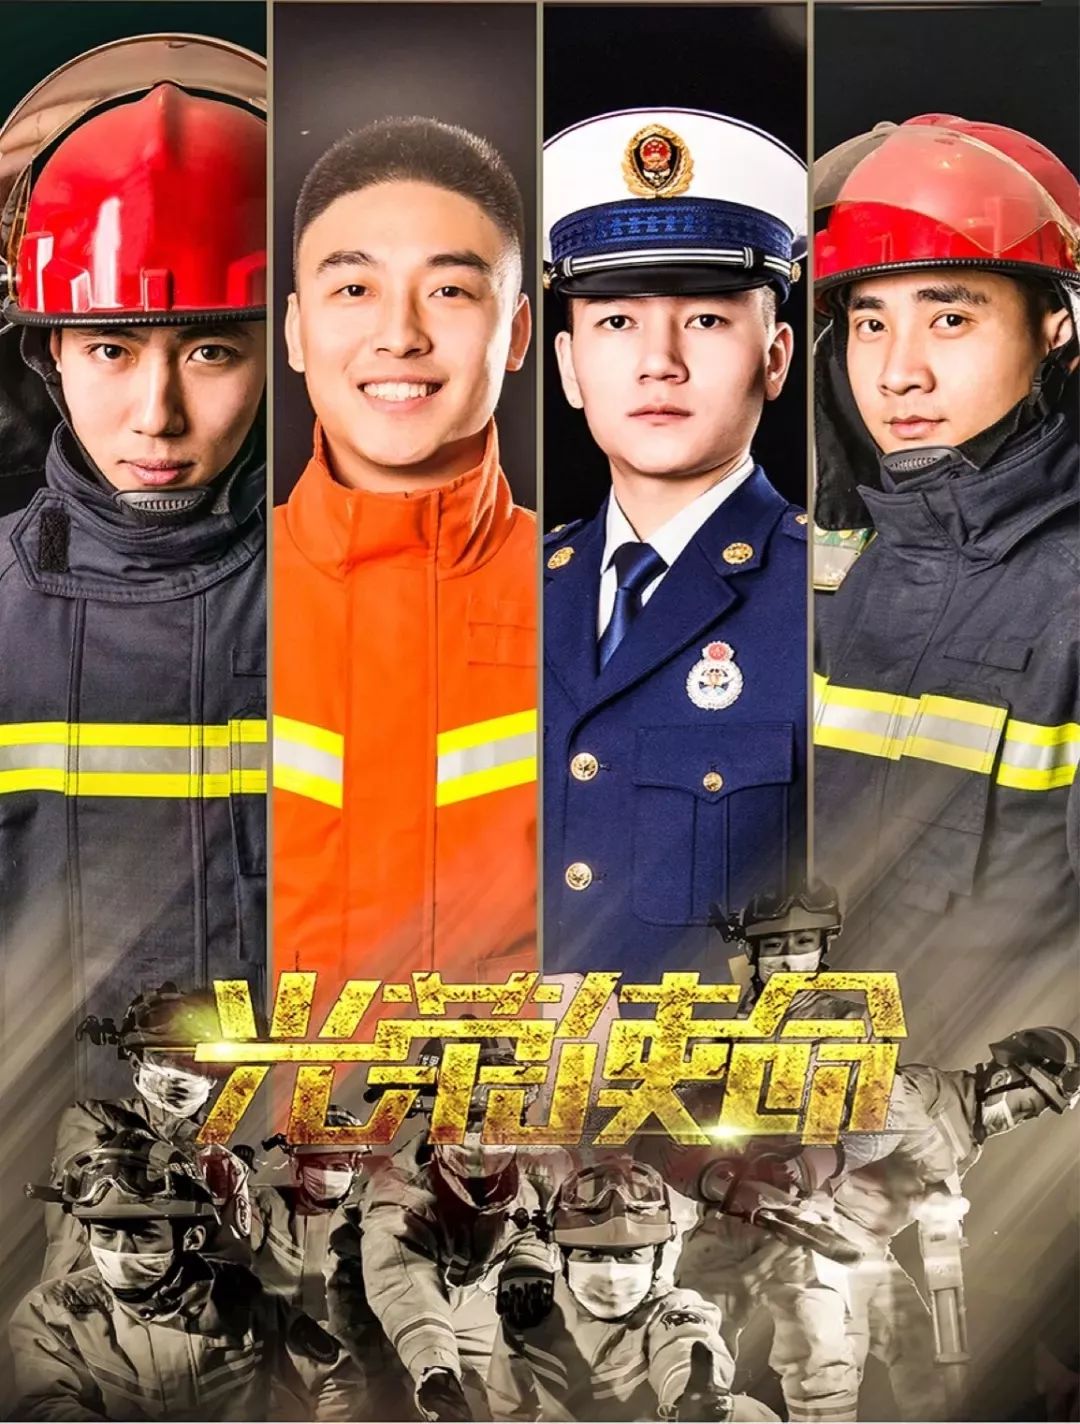 来啦,老弟!2019年广西壮族自治区消防员招录公告来了!